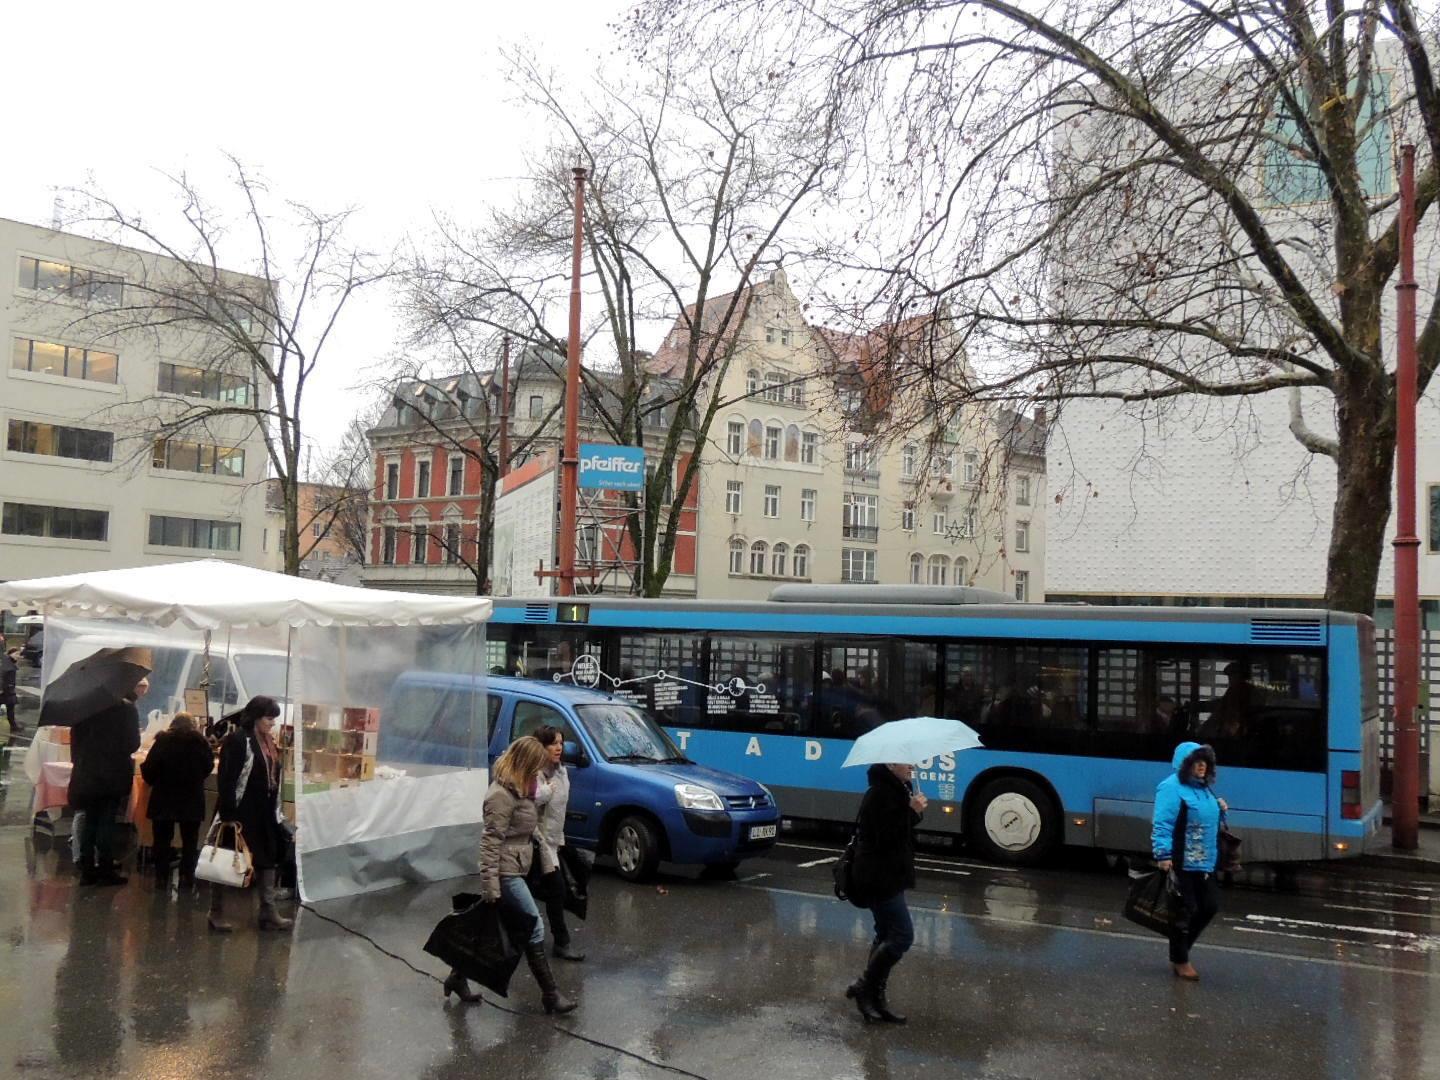 Die Stadtbusbenützer werden gebeten auf die Landbuslinie „Inselstraße“ auszuweichen